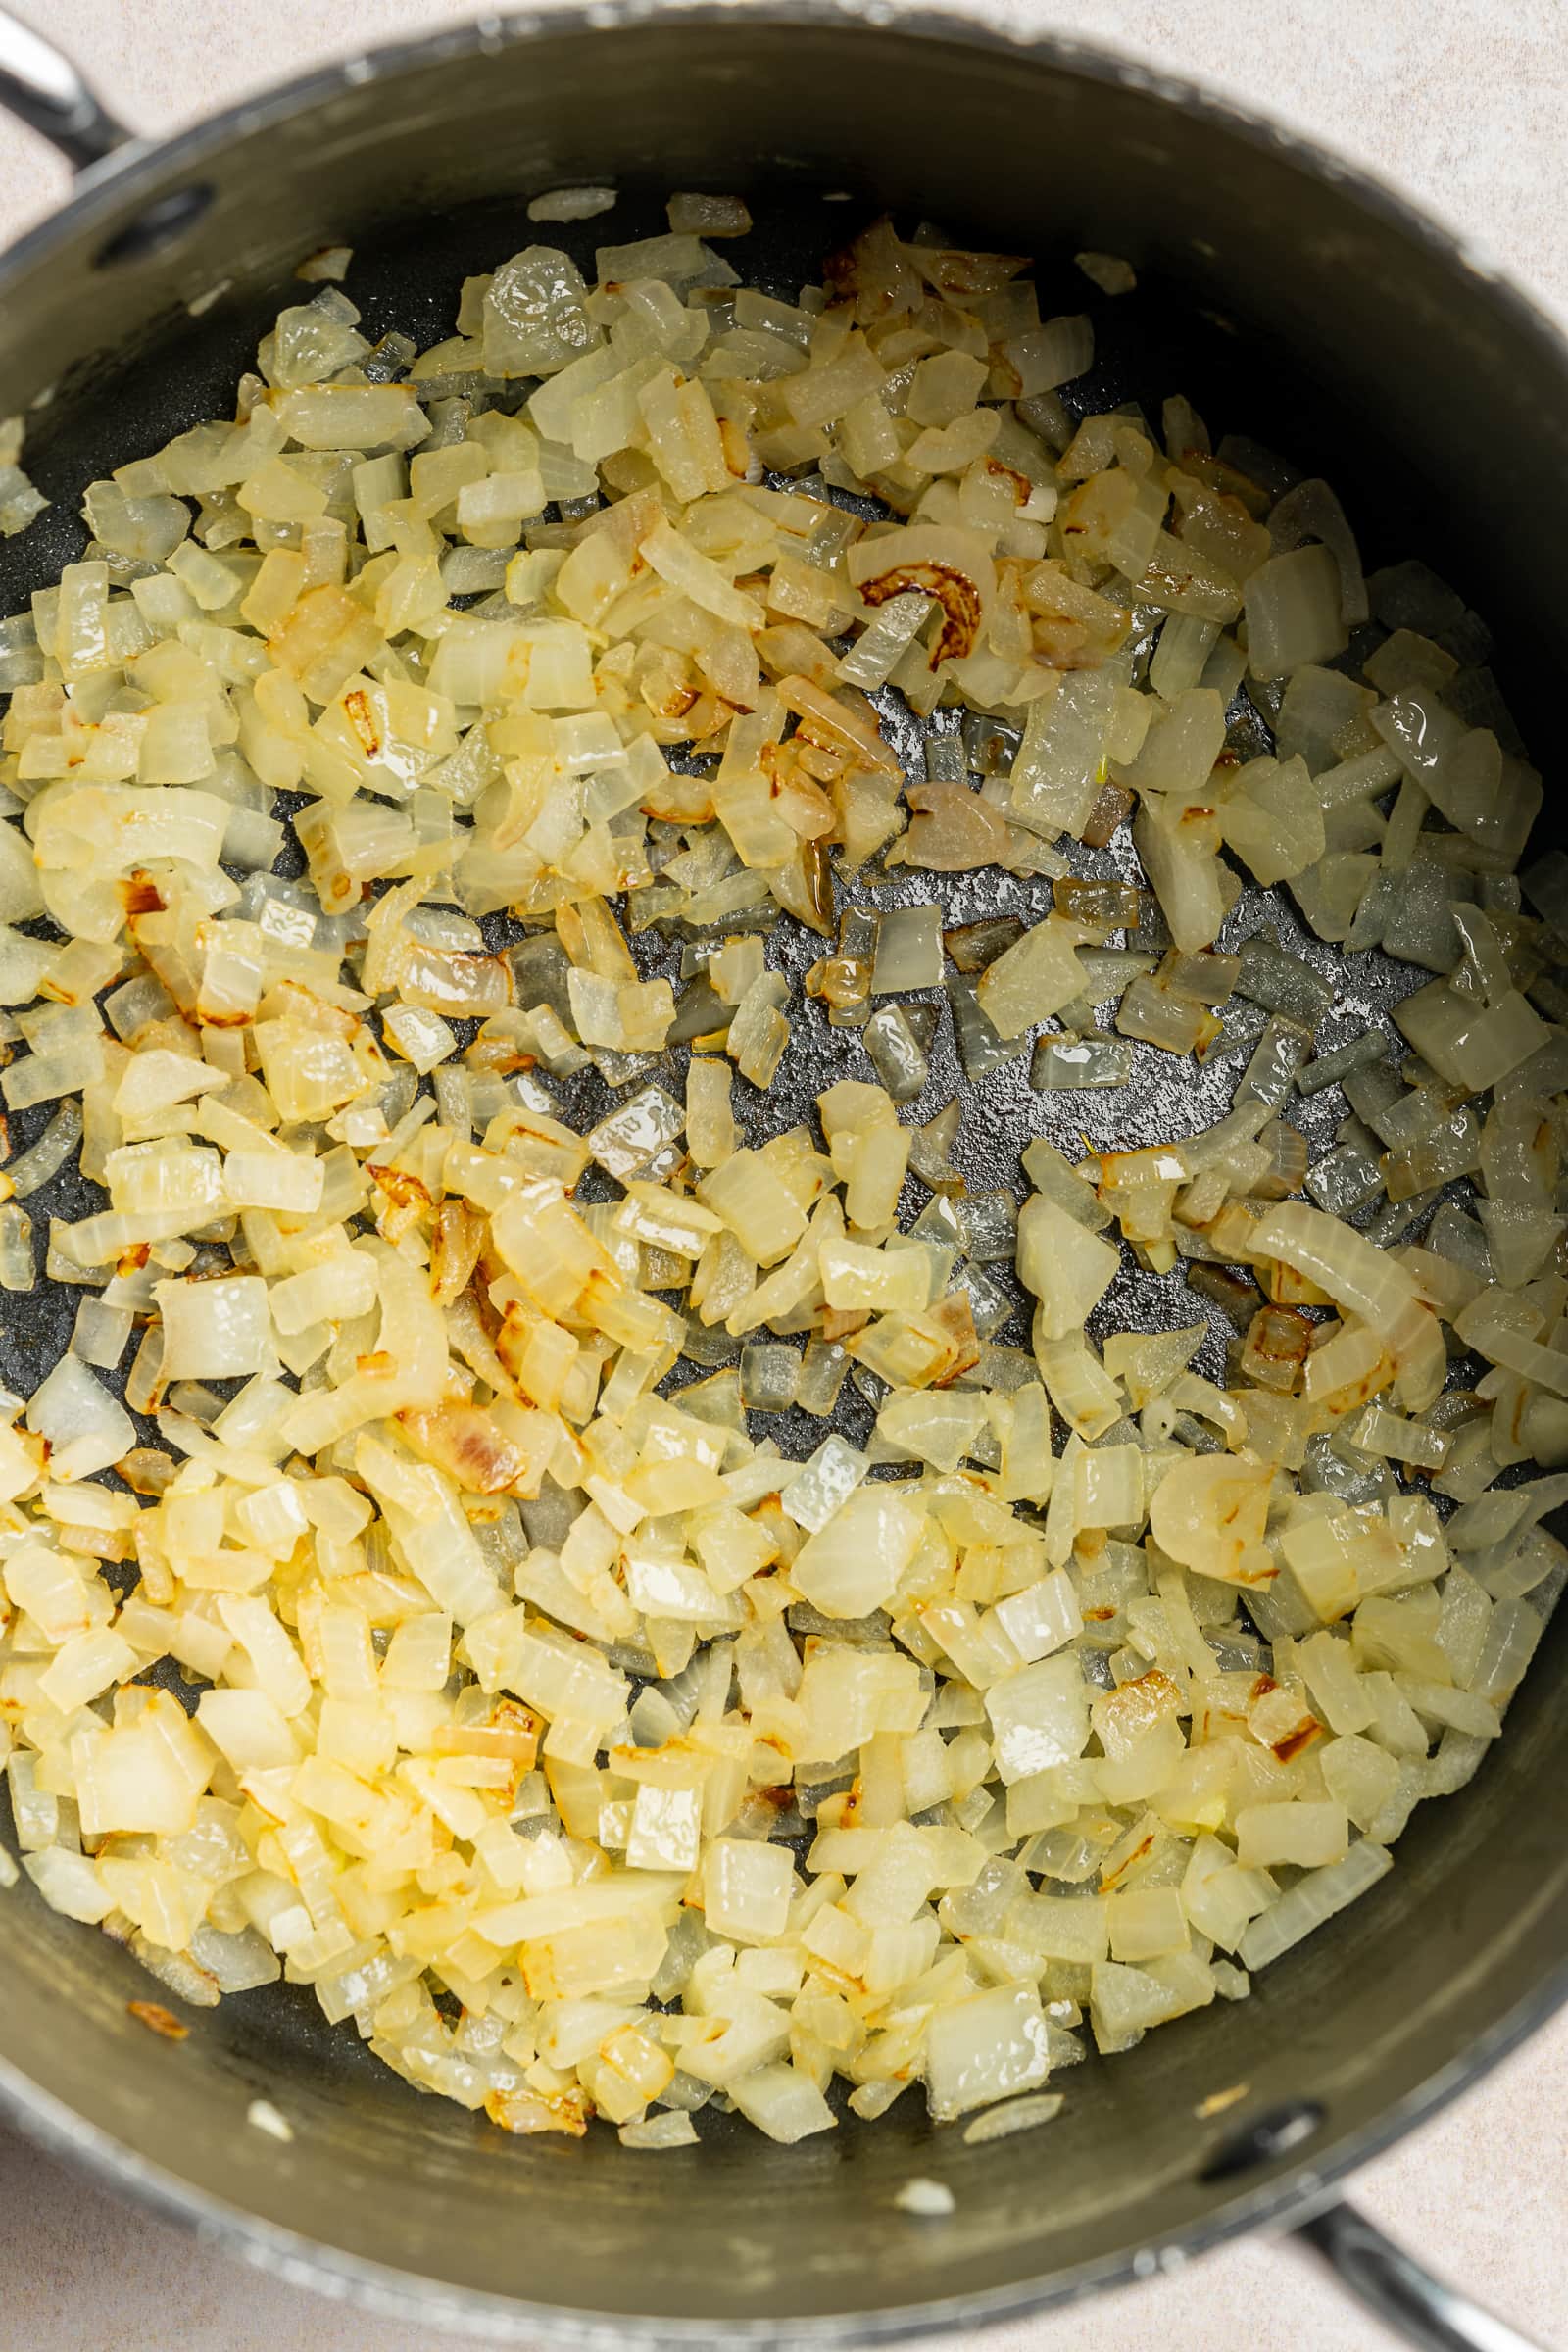 Sautéed onions in a large soup pot.